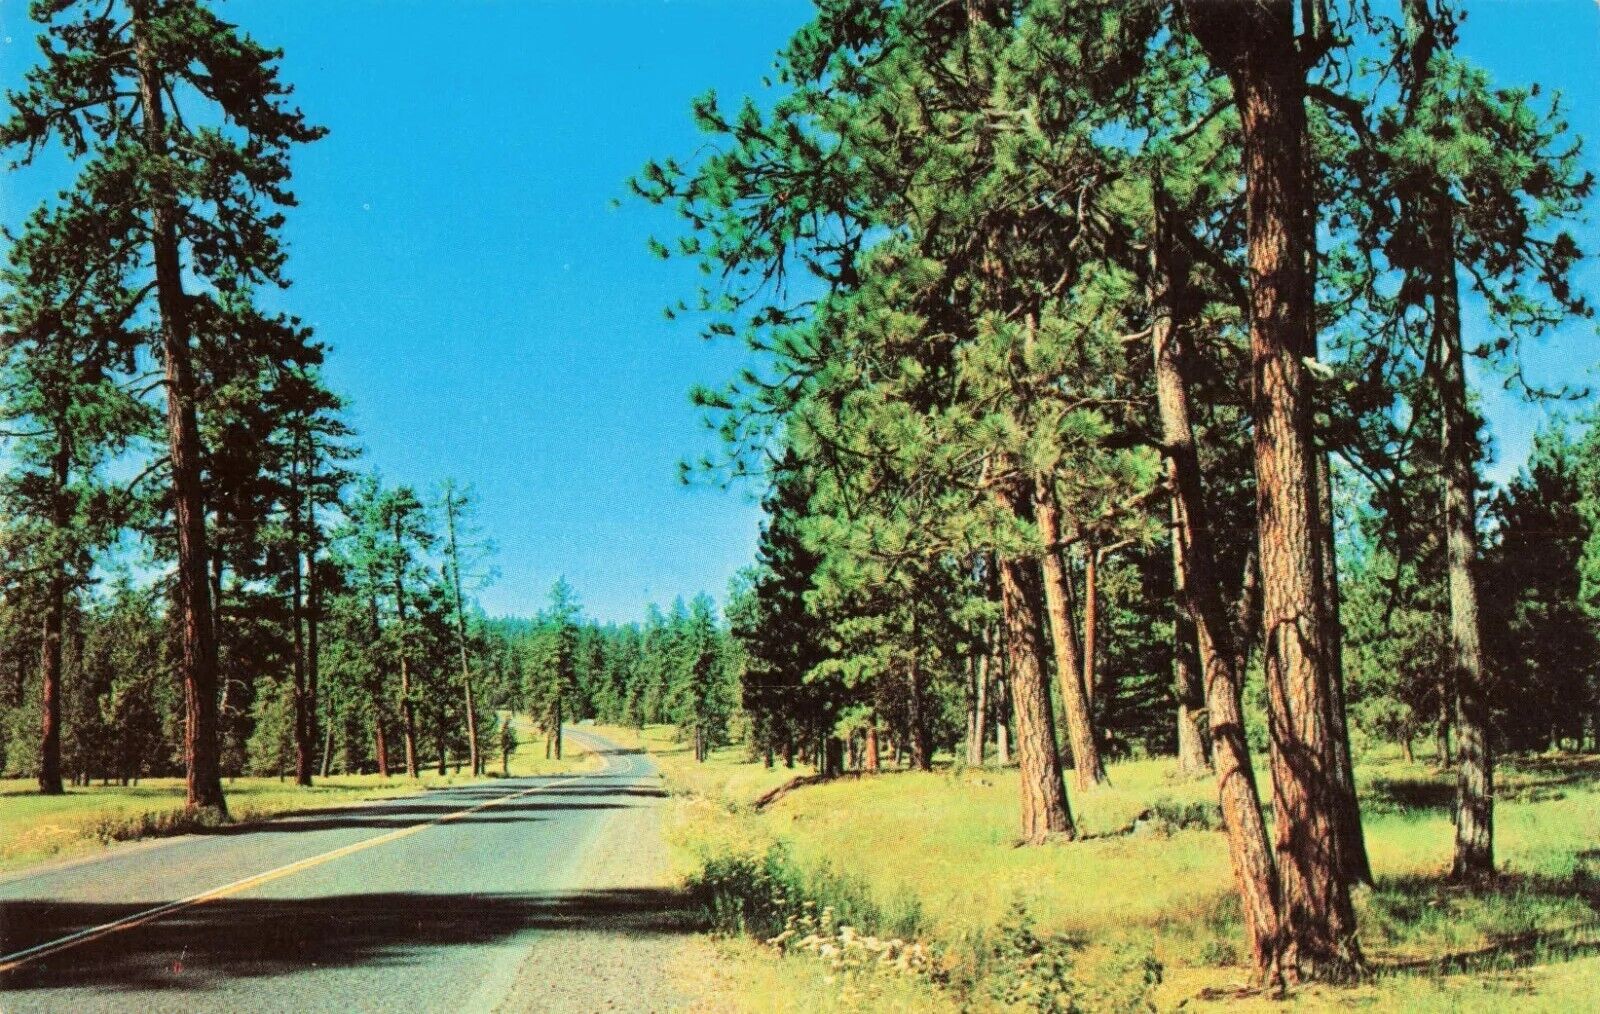 Highway 30 in Eastern Oregon OR - Pendleton, La Grande, Baker - Postcard